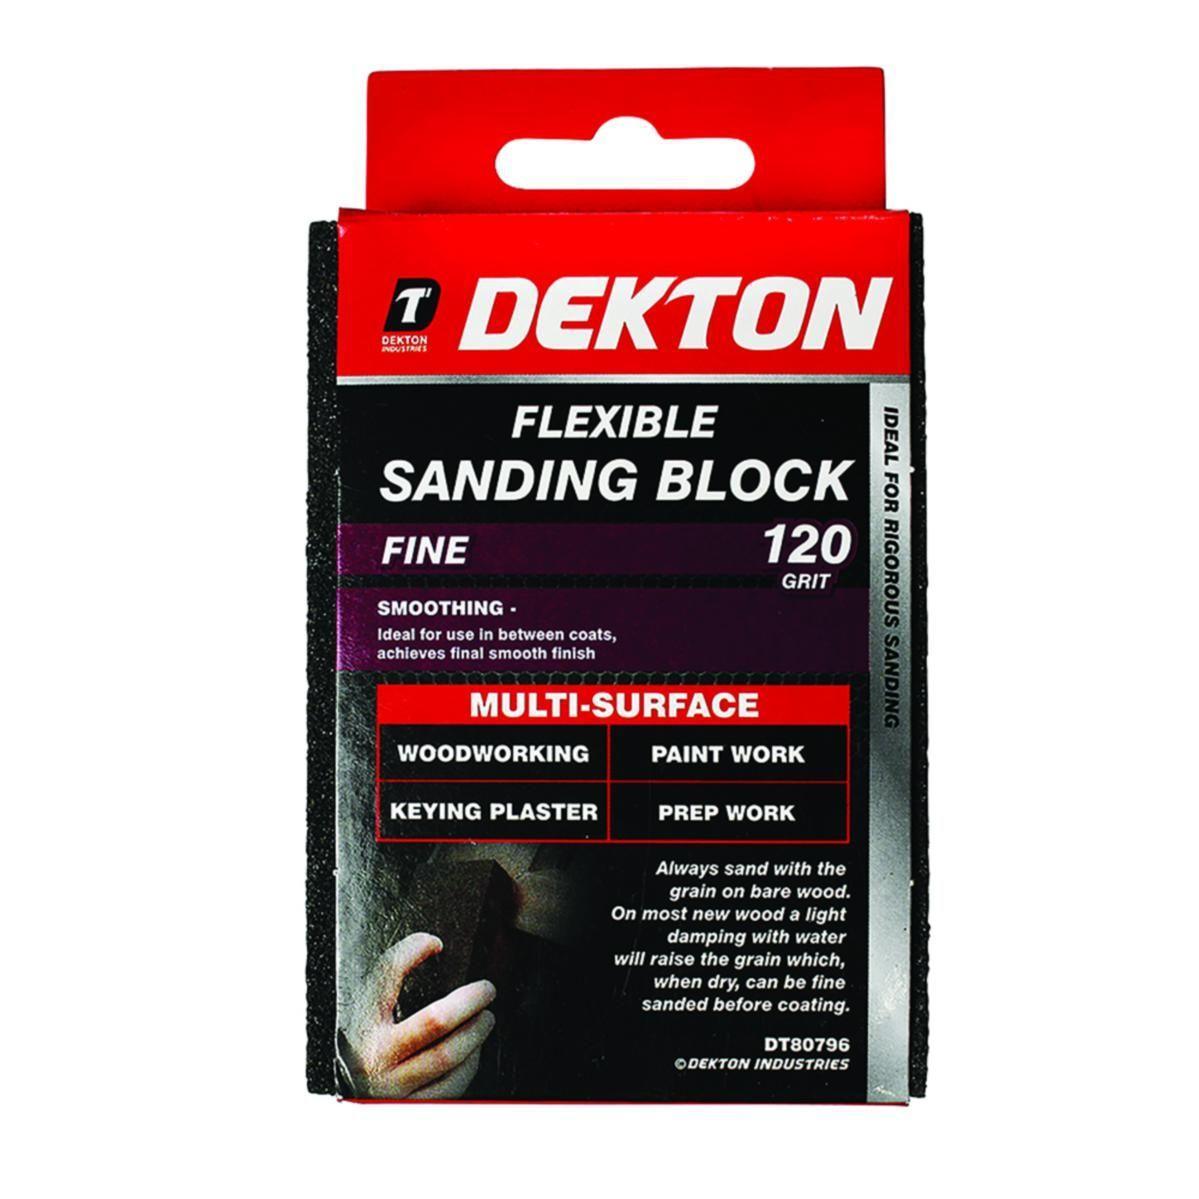 Dekton | Flexible Sanding Block Fine 120 Grit DT80796 - Choice Stores